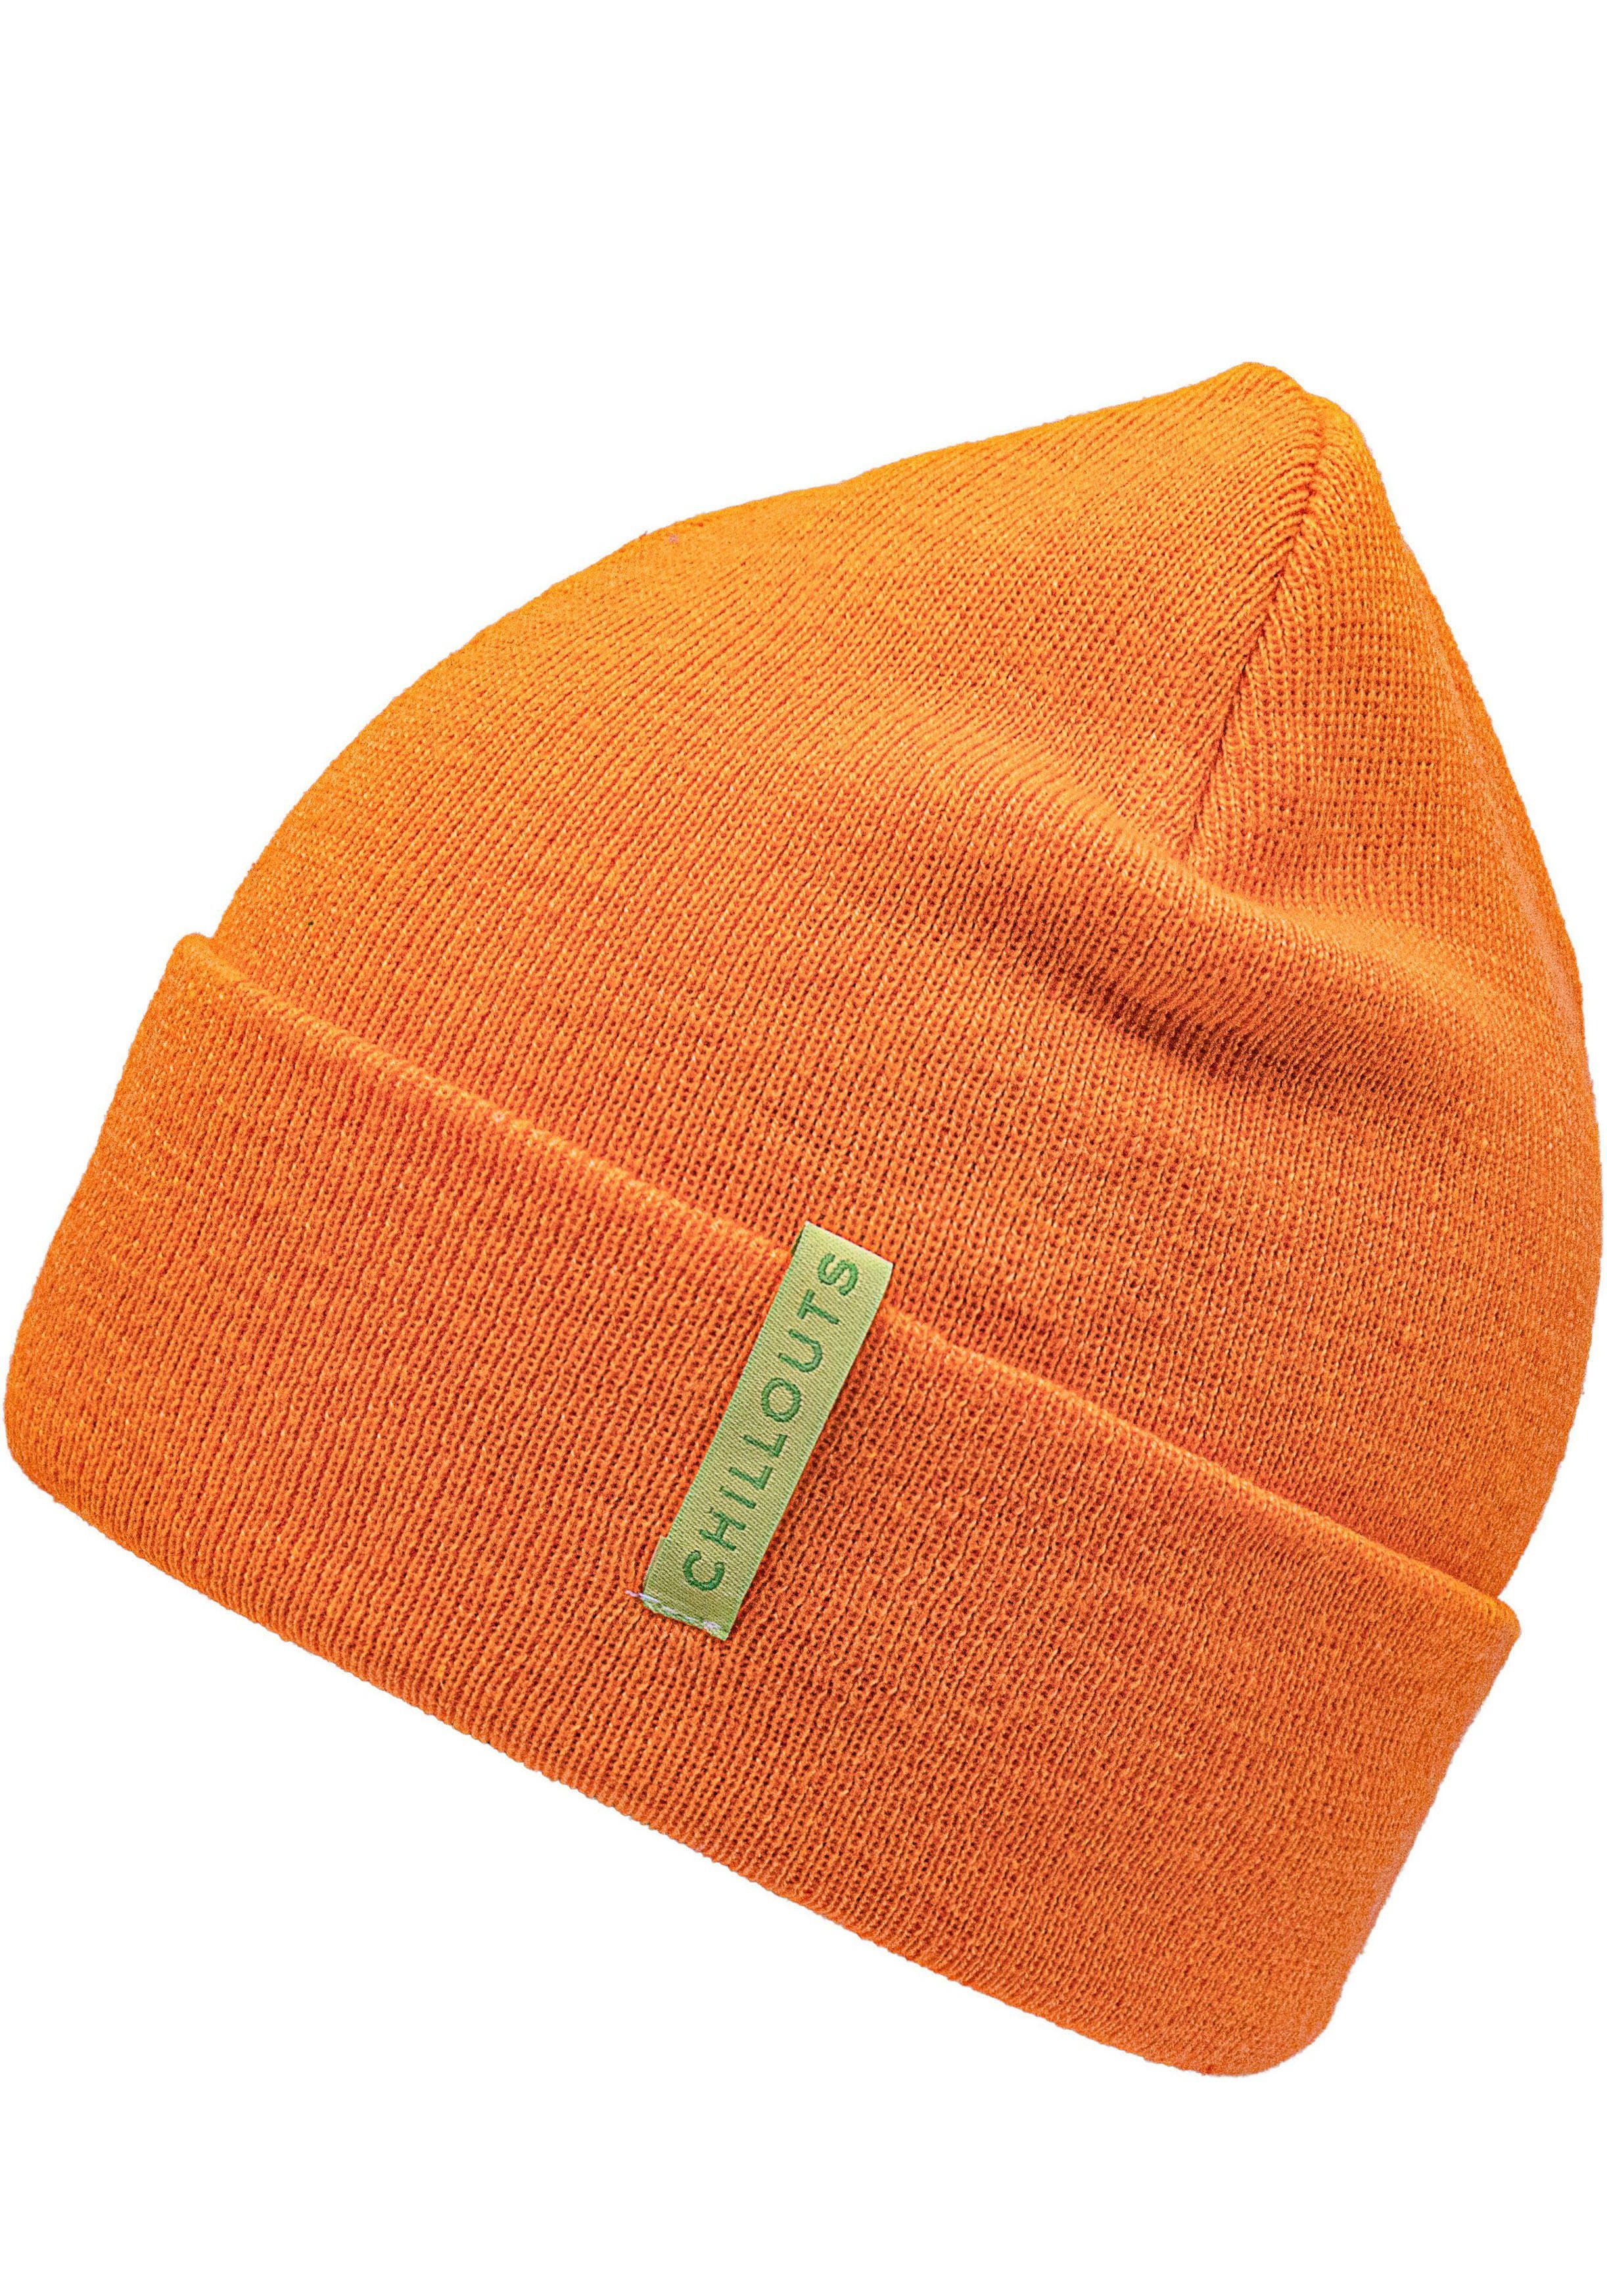 chillouts Strickmütze Monty Hat Mit breitem Umschlag orange